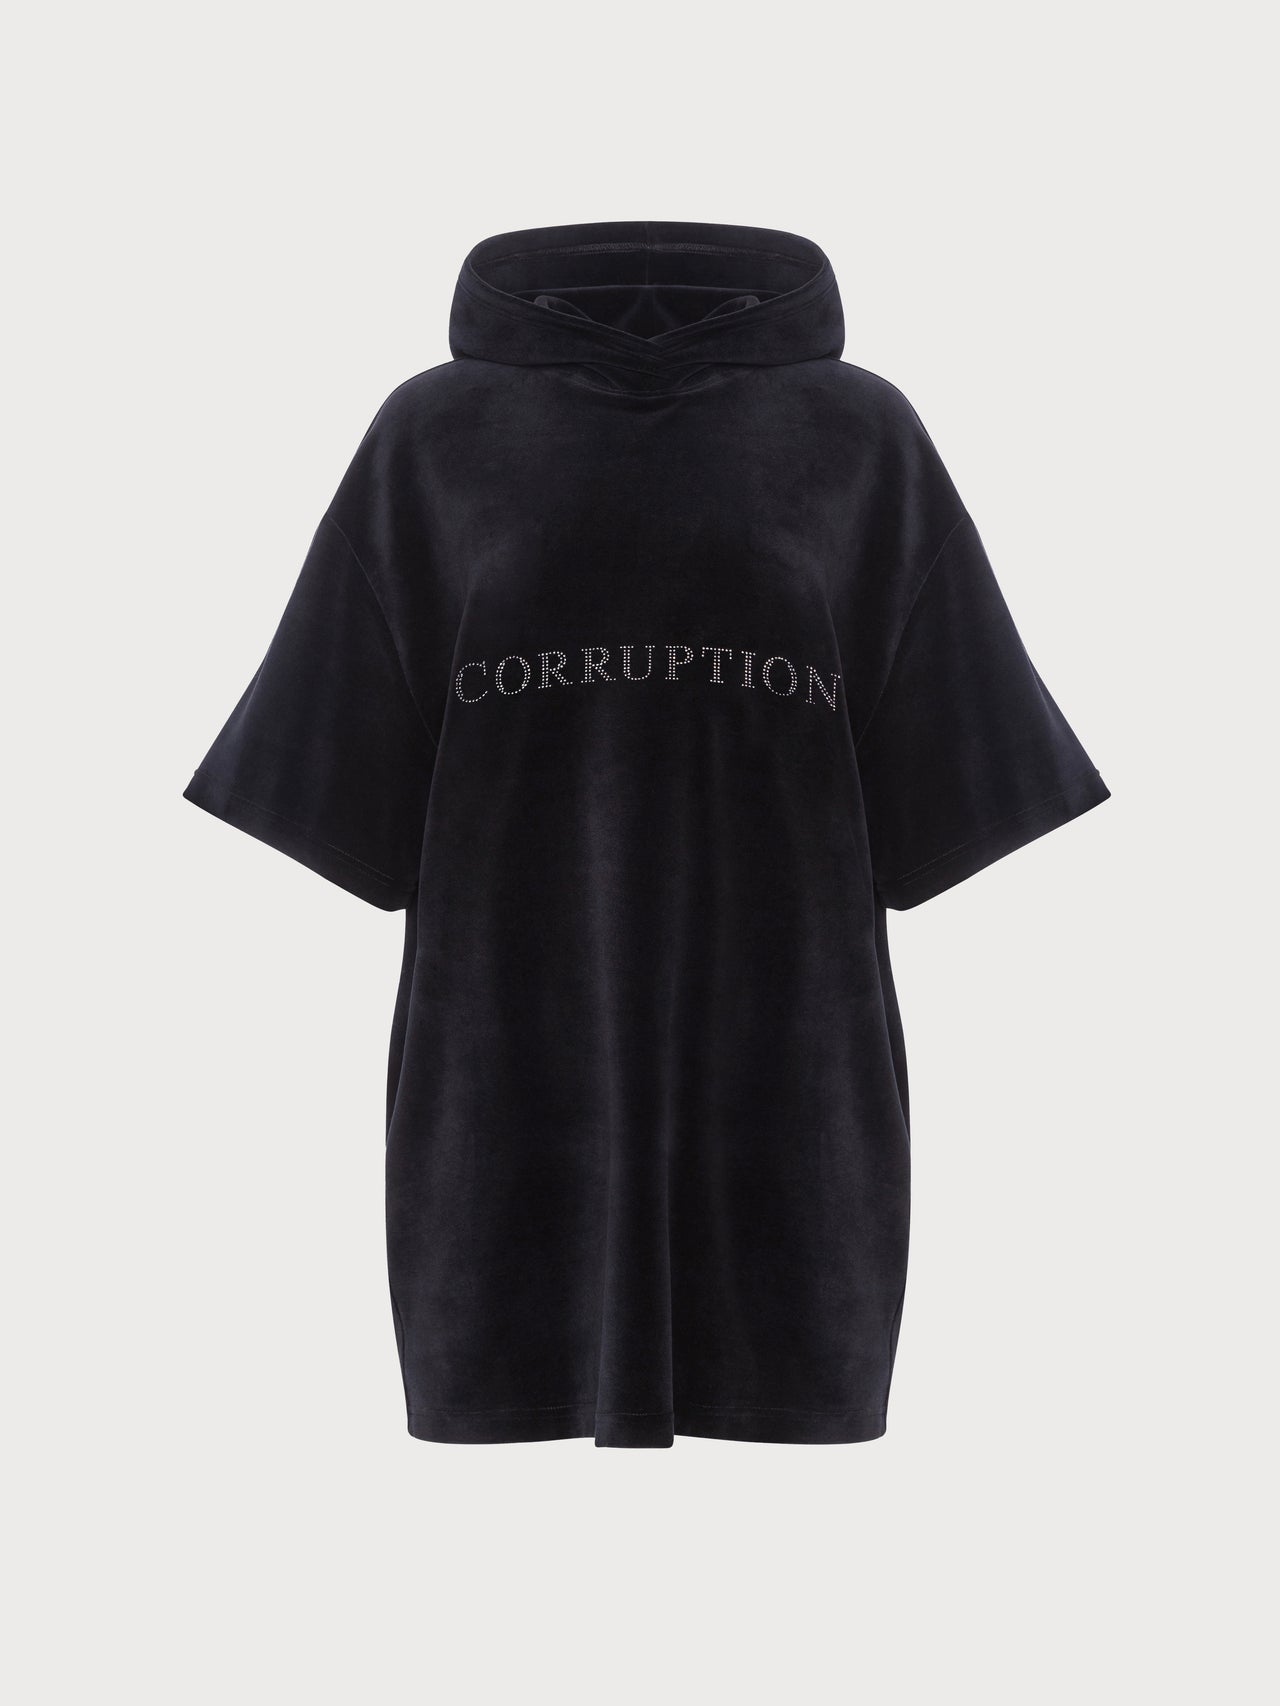 Velour Corruption Dress